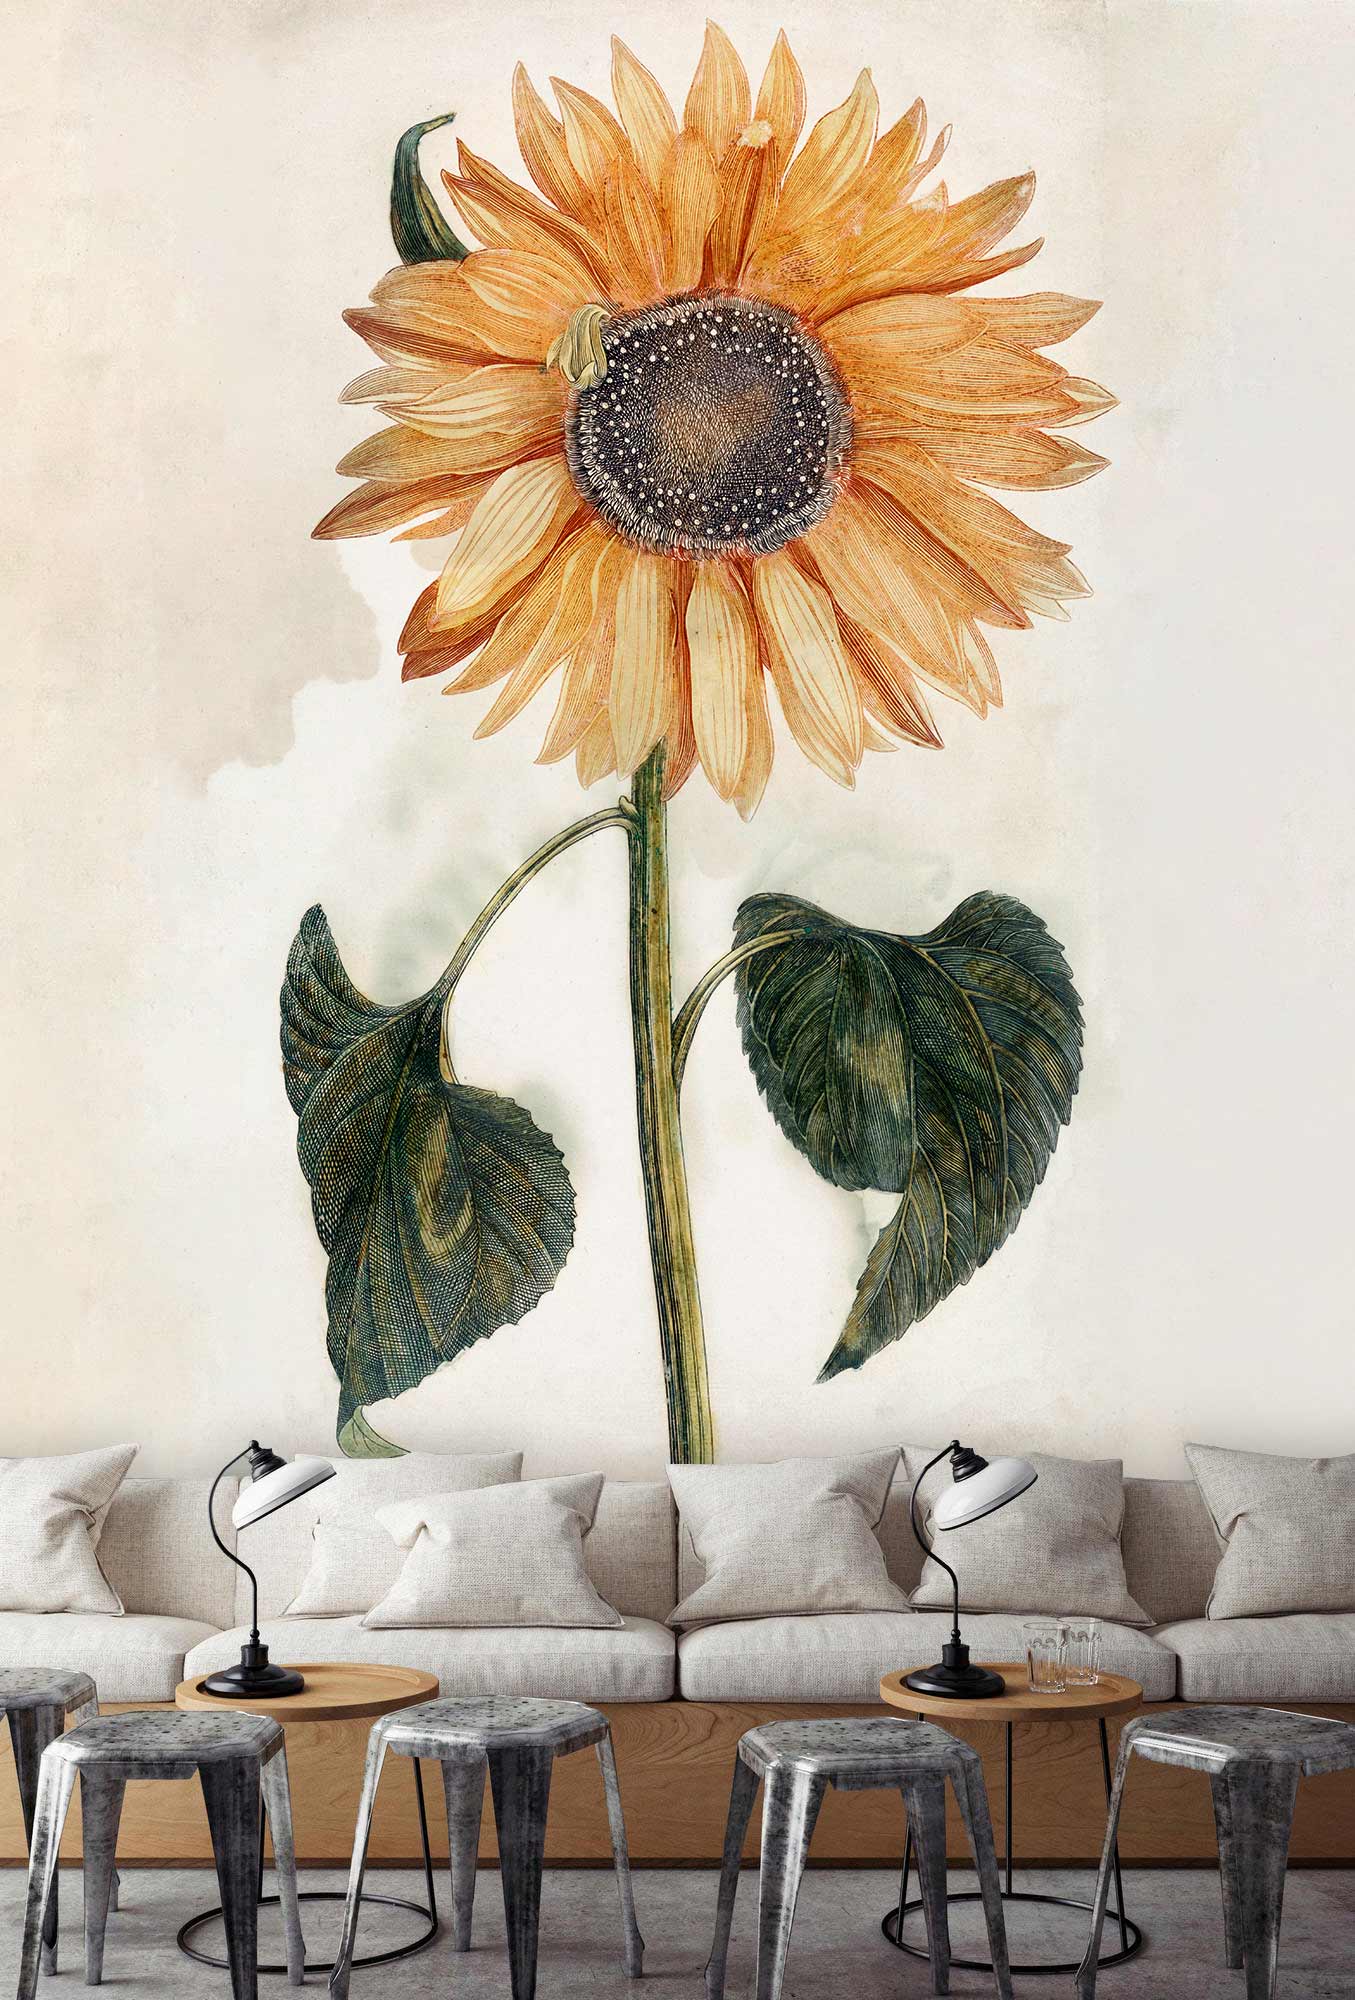 Sunflower Wall Mural Art Design For Restaurant